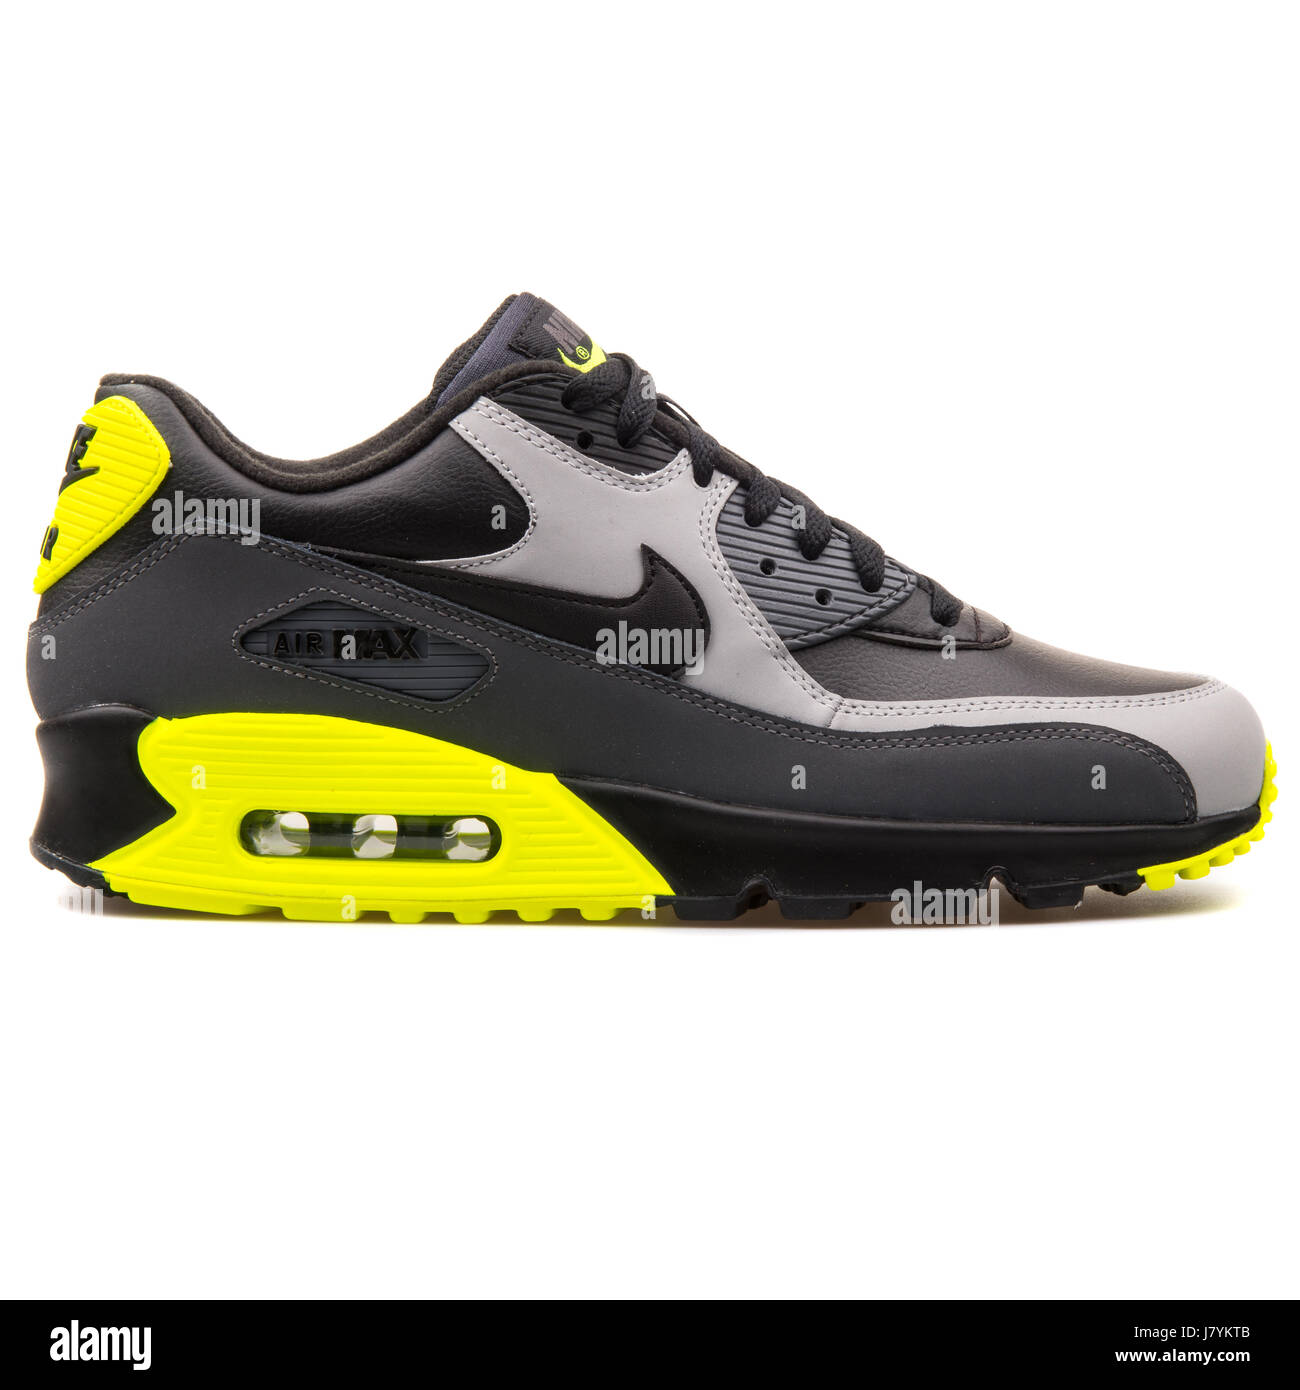 Nike Air Max 90 LTR schwarz Turnschuhe grau und Gelb Herren Sport -  652980-007 Stockfotografie - Alamy